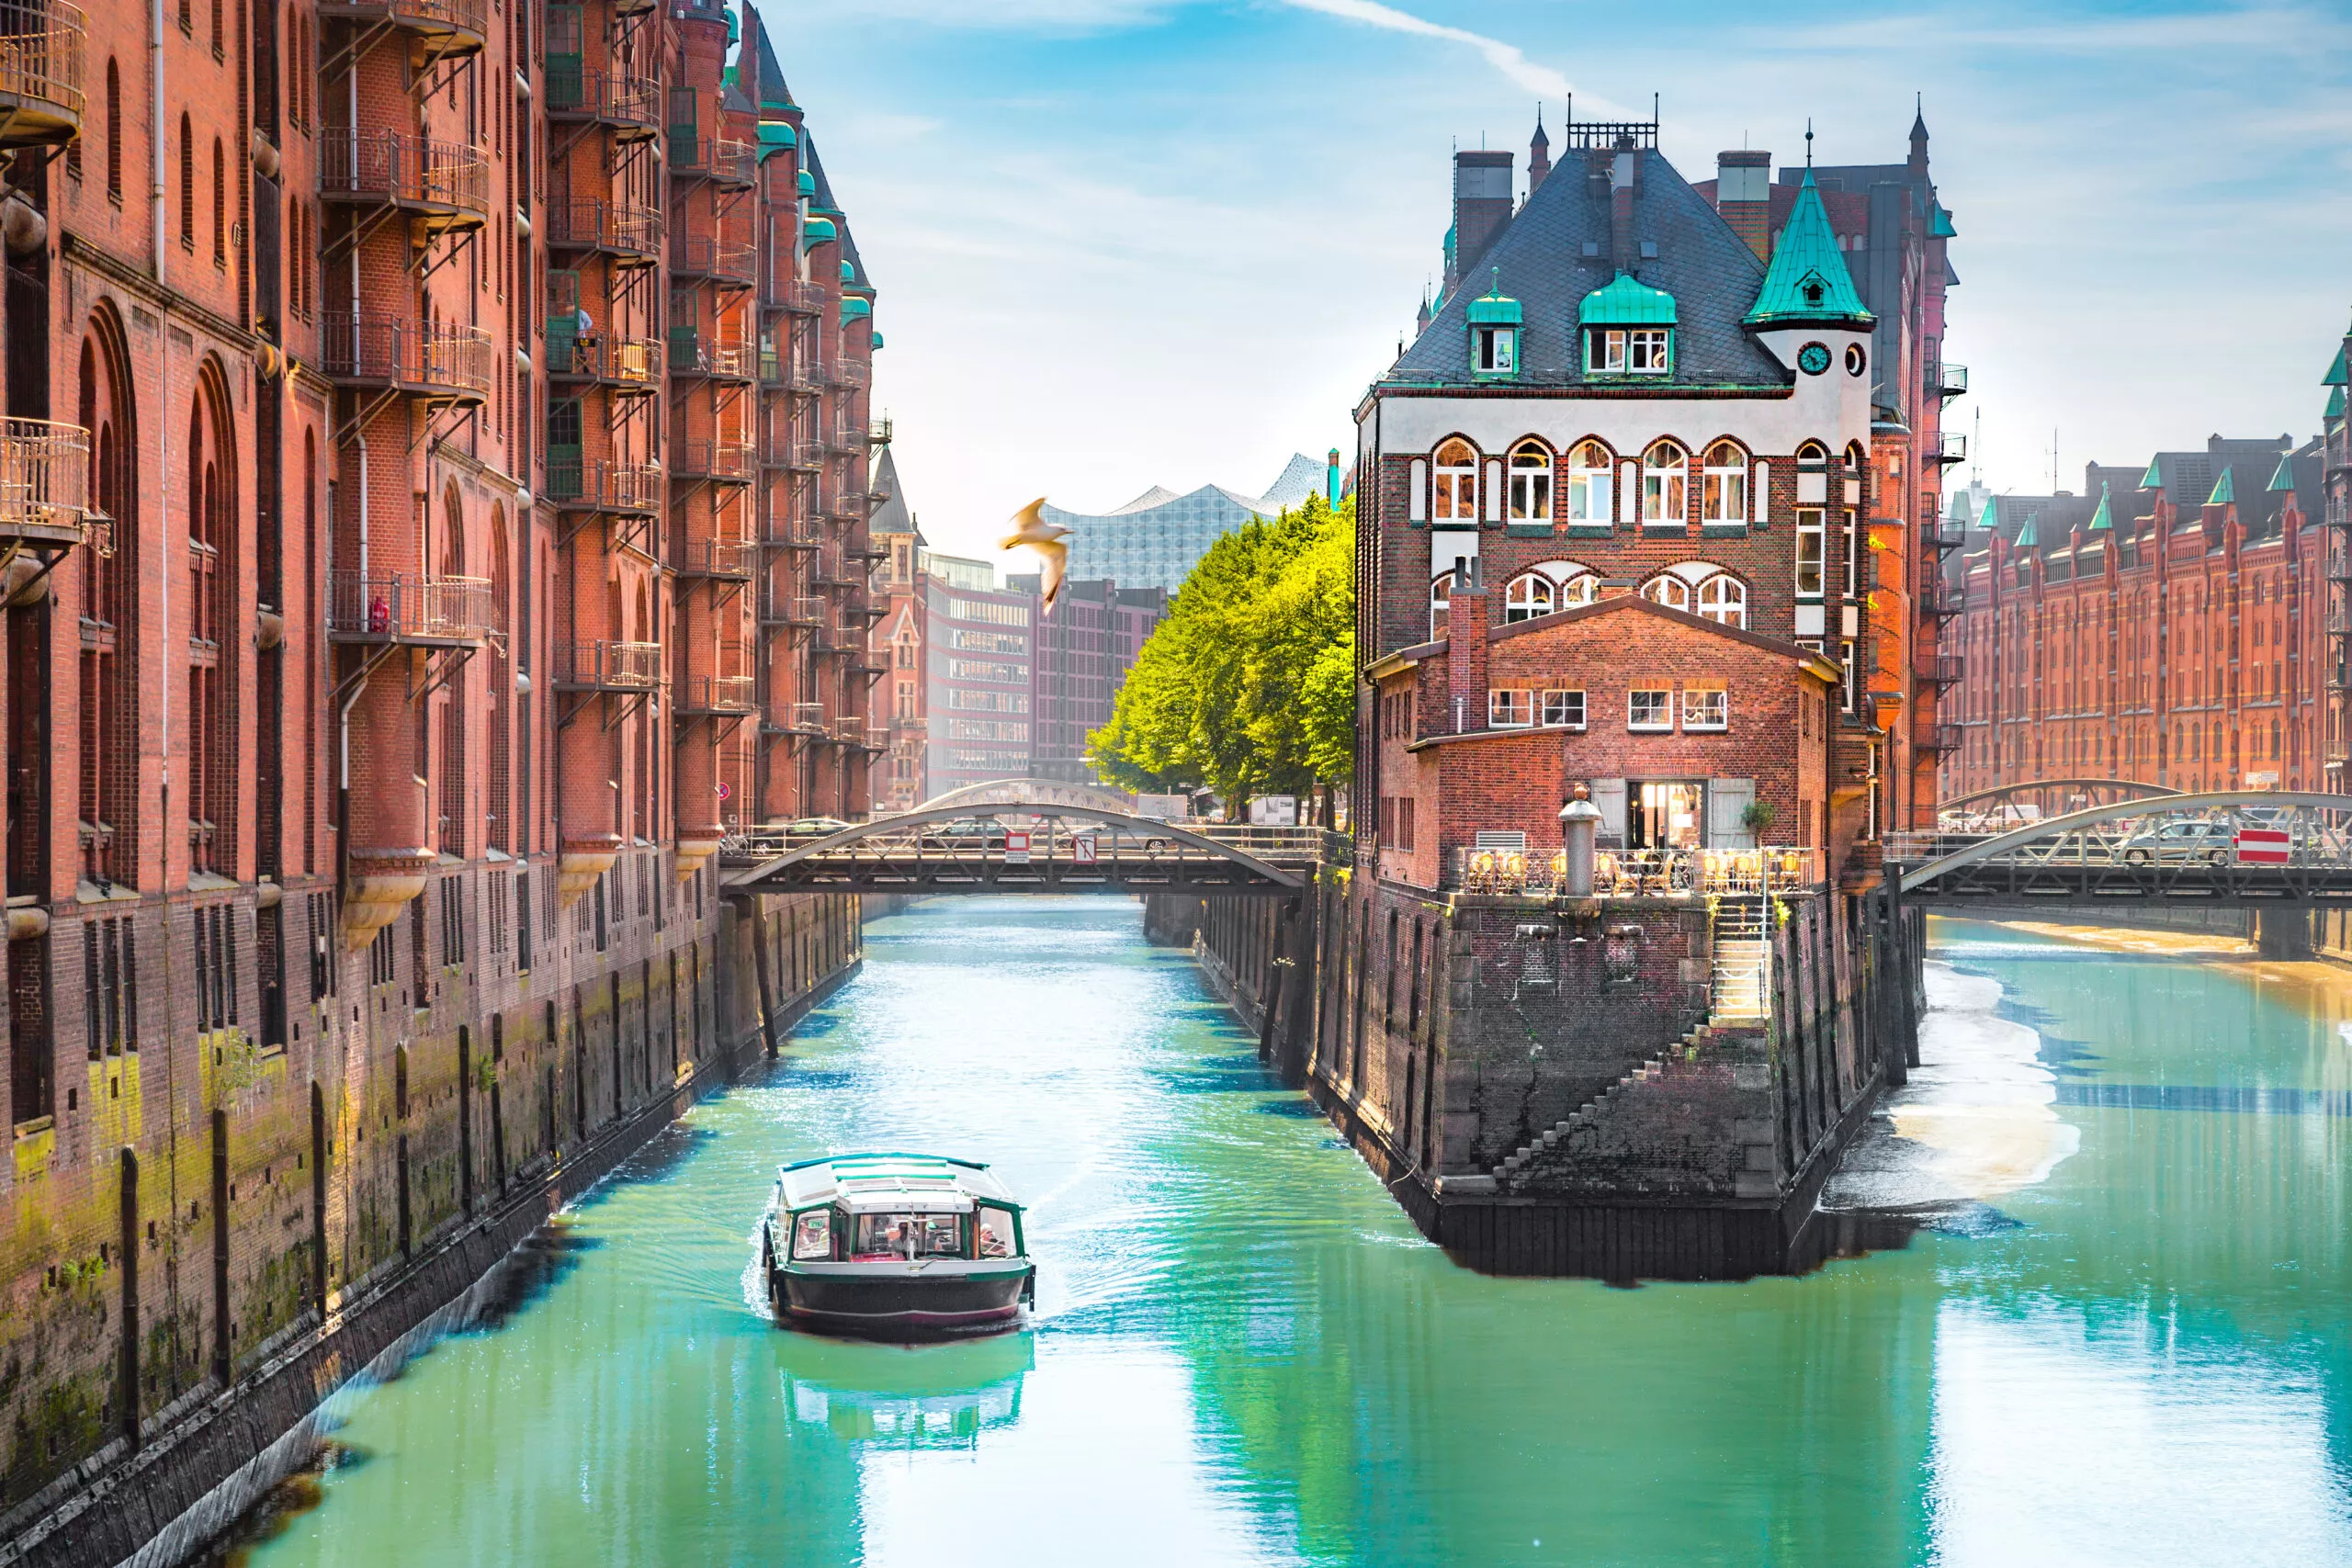 Портовый район Гамбурга Шпайхерштадт с экскурсионным катером летом, Германия